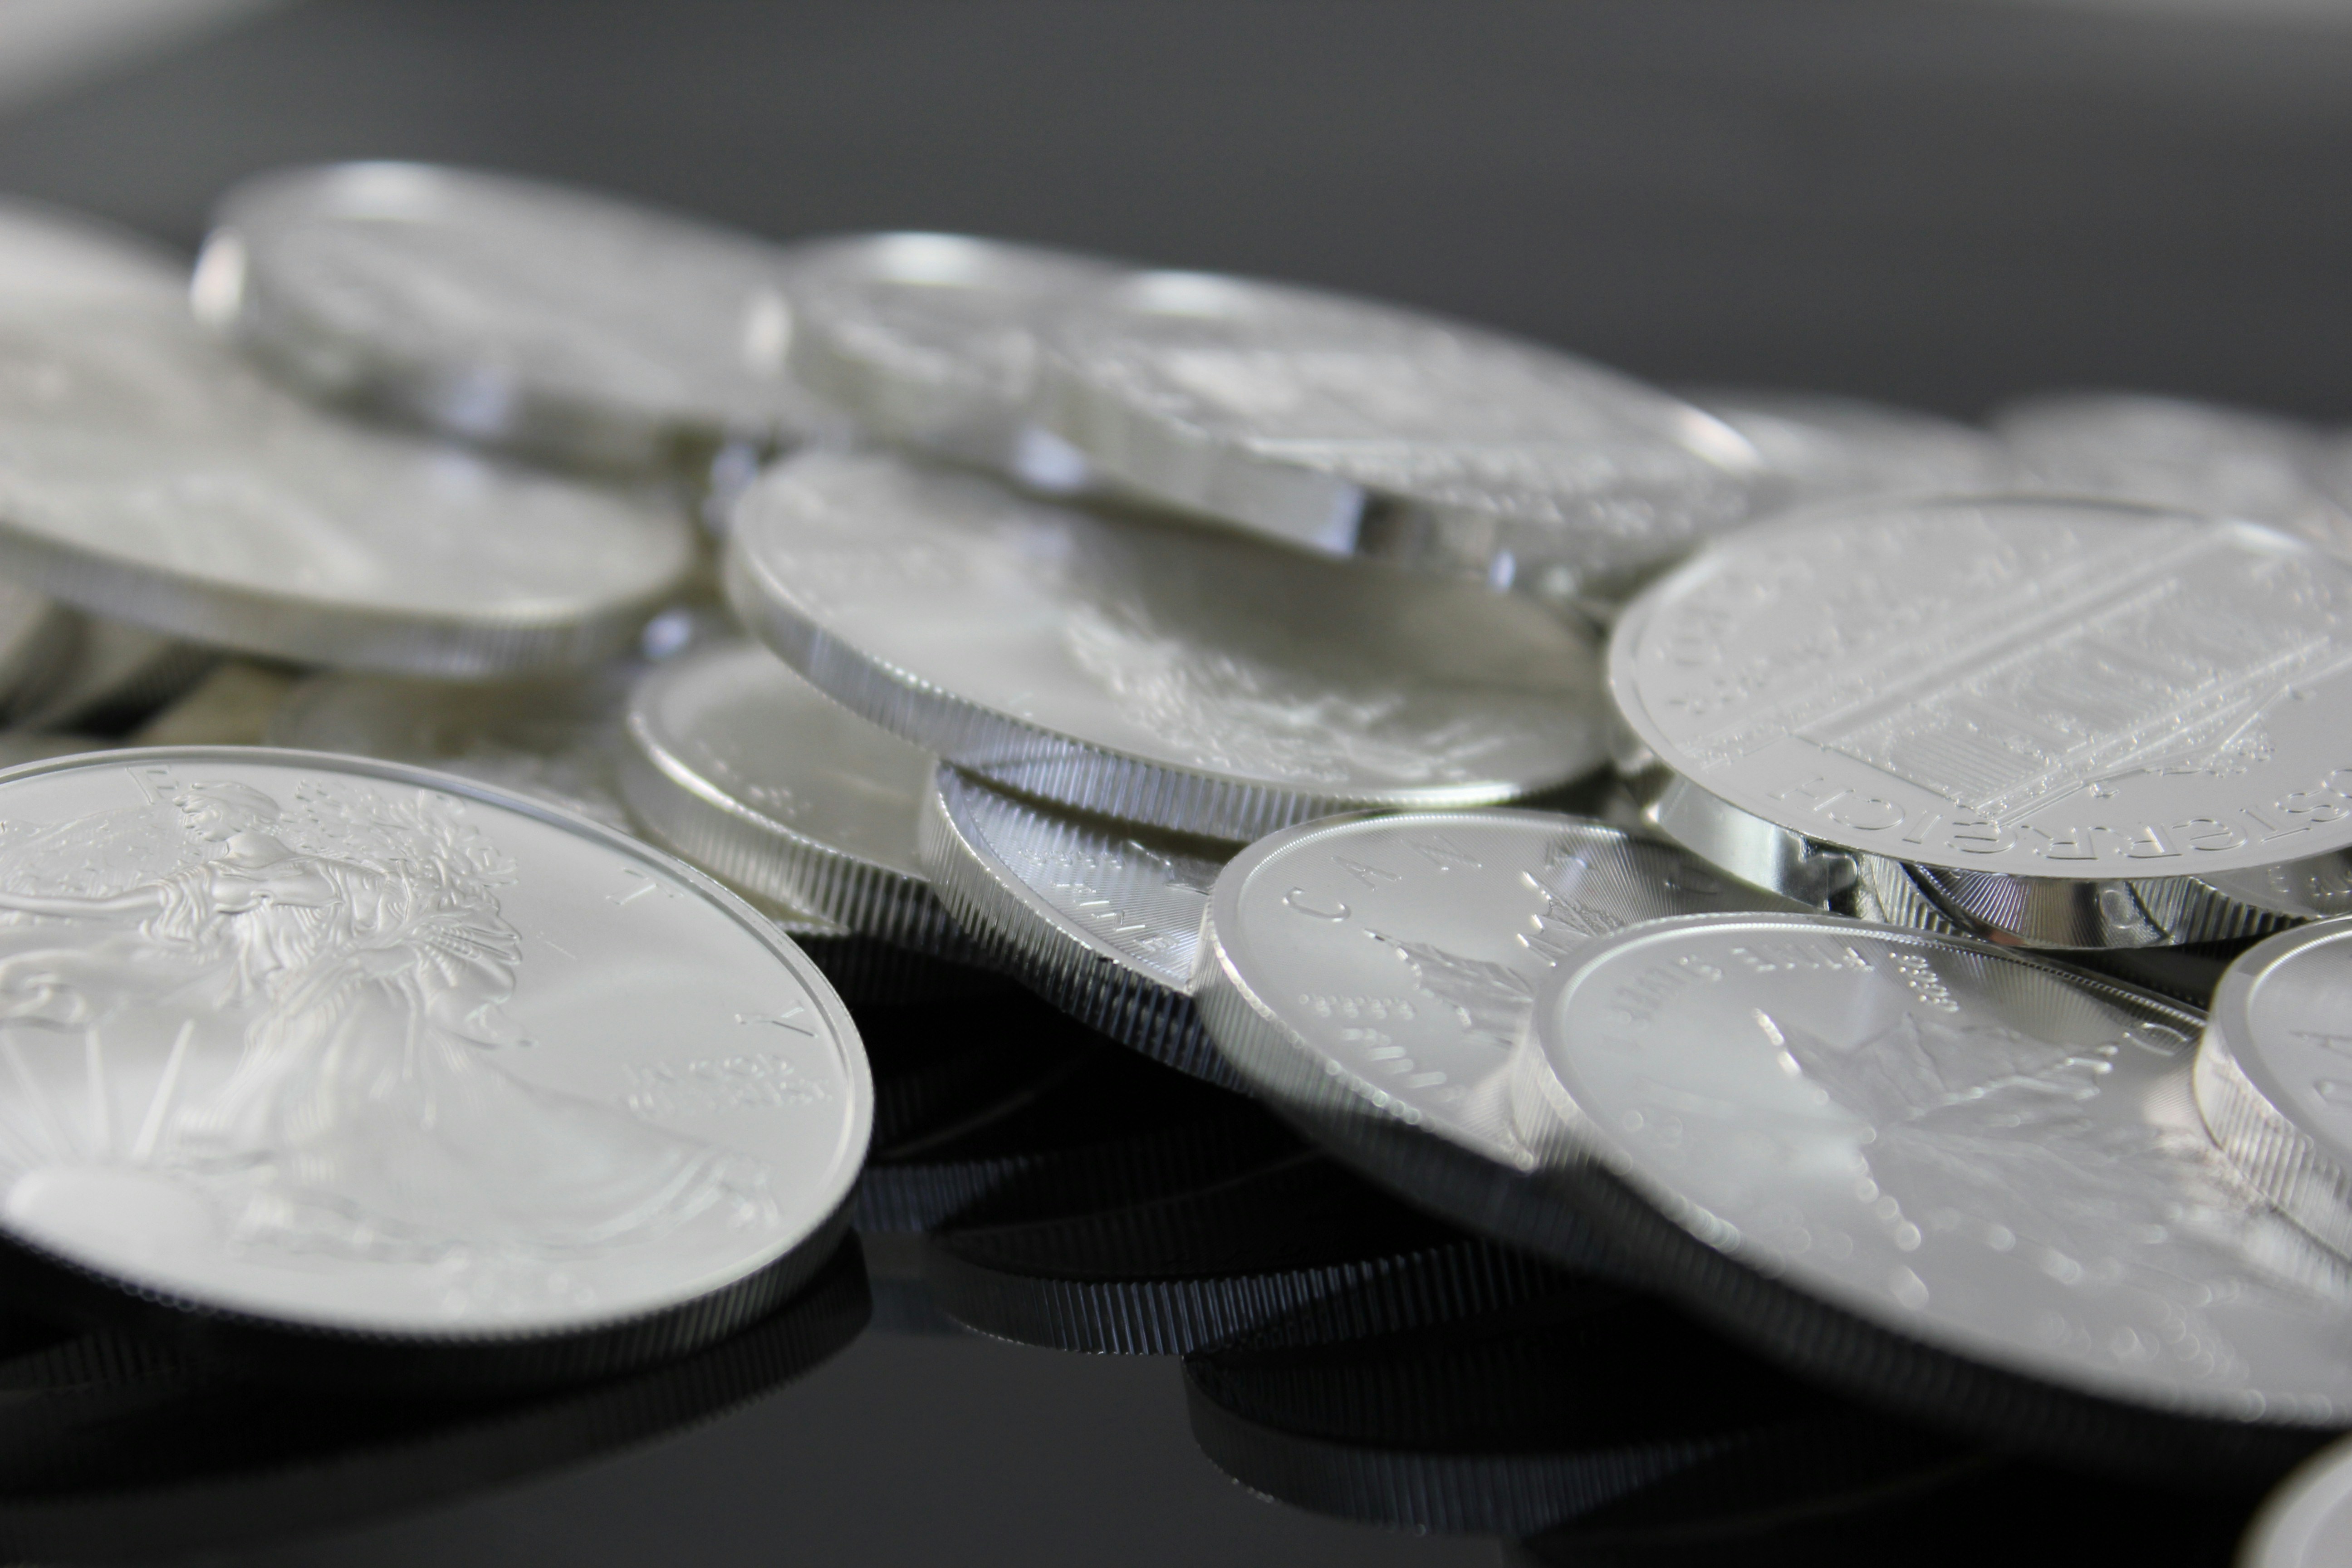 monete in argento su una superfice scura